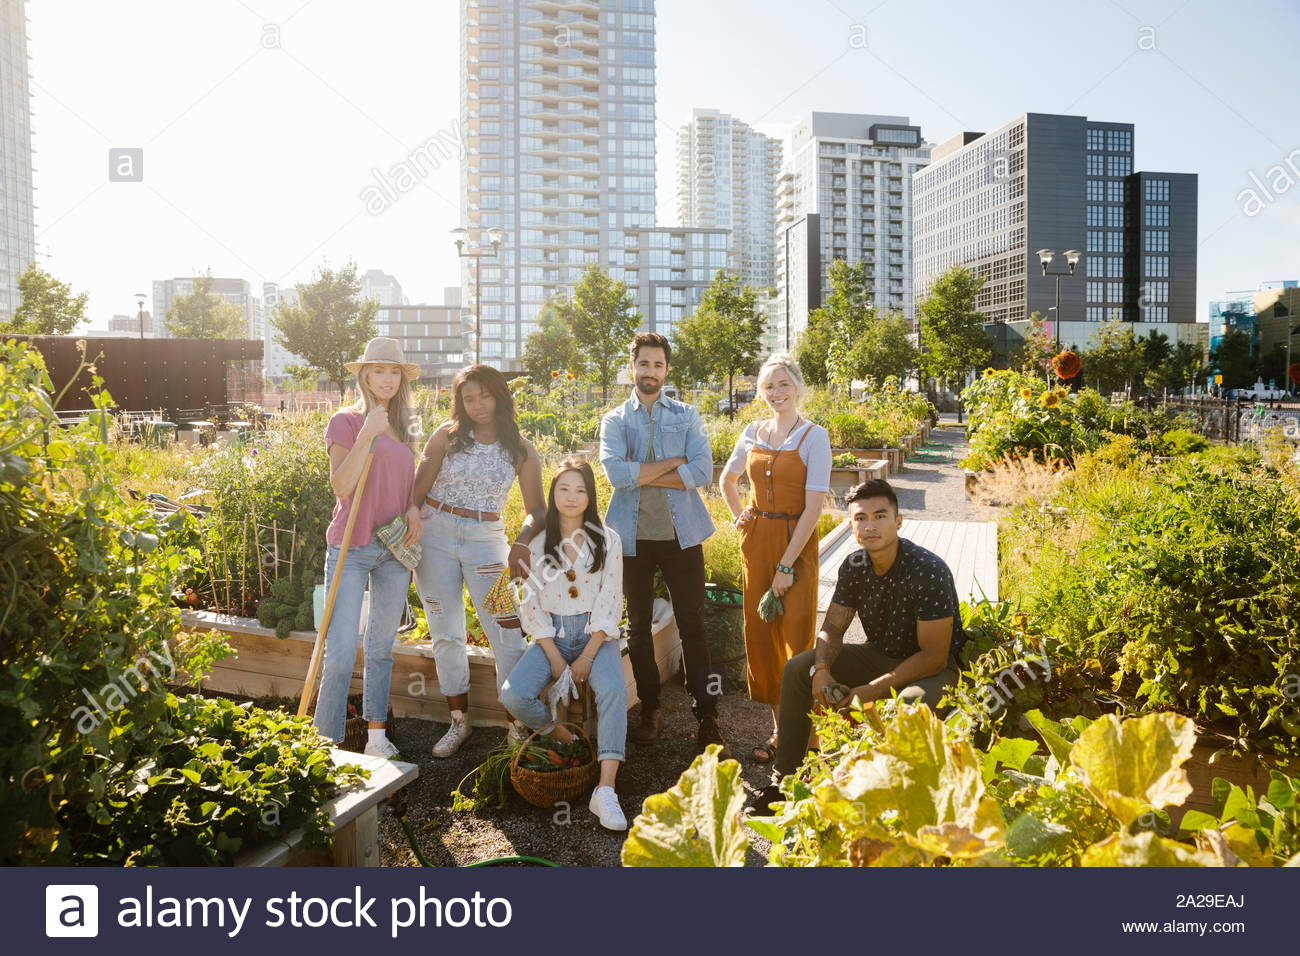 Retratos de amigos adultos jóvenes confiados en la soleada, jardín comunitario urbano Foto de stock